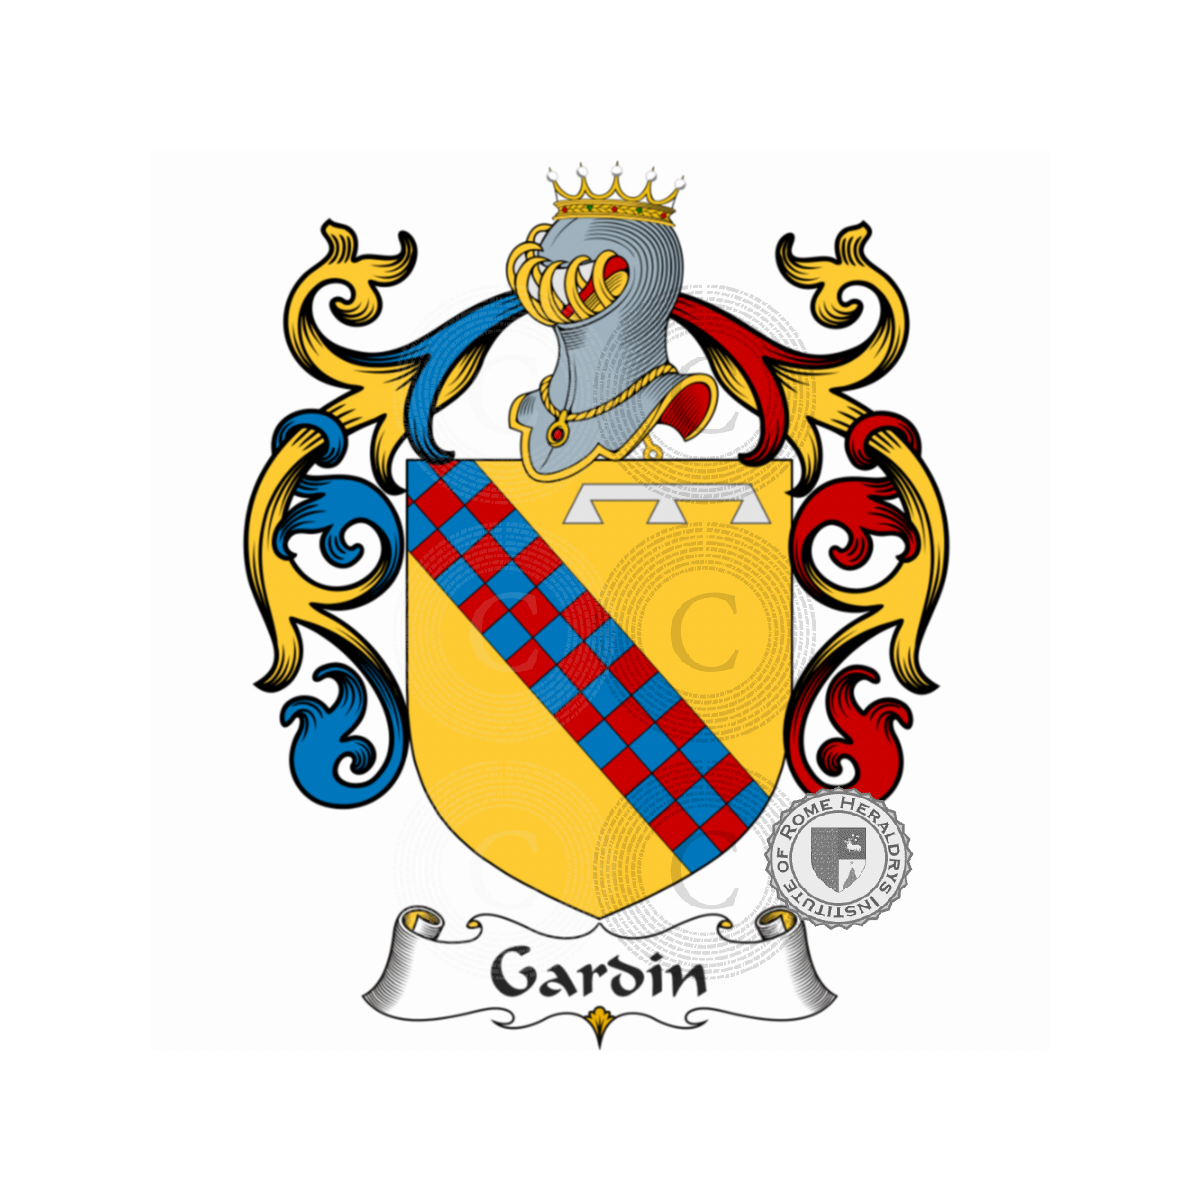 Stemma della famigliaGardin, du Gardin,Gardi,Gardin de Boishamon,Gardin de Lapillardière